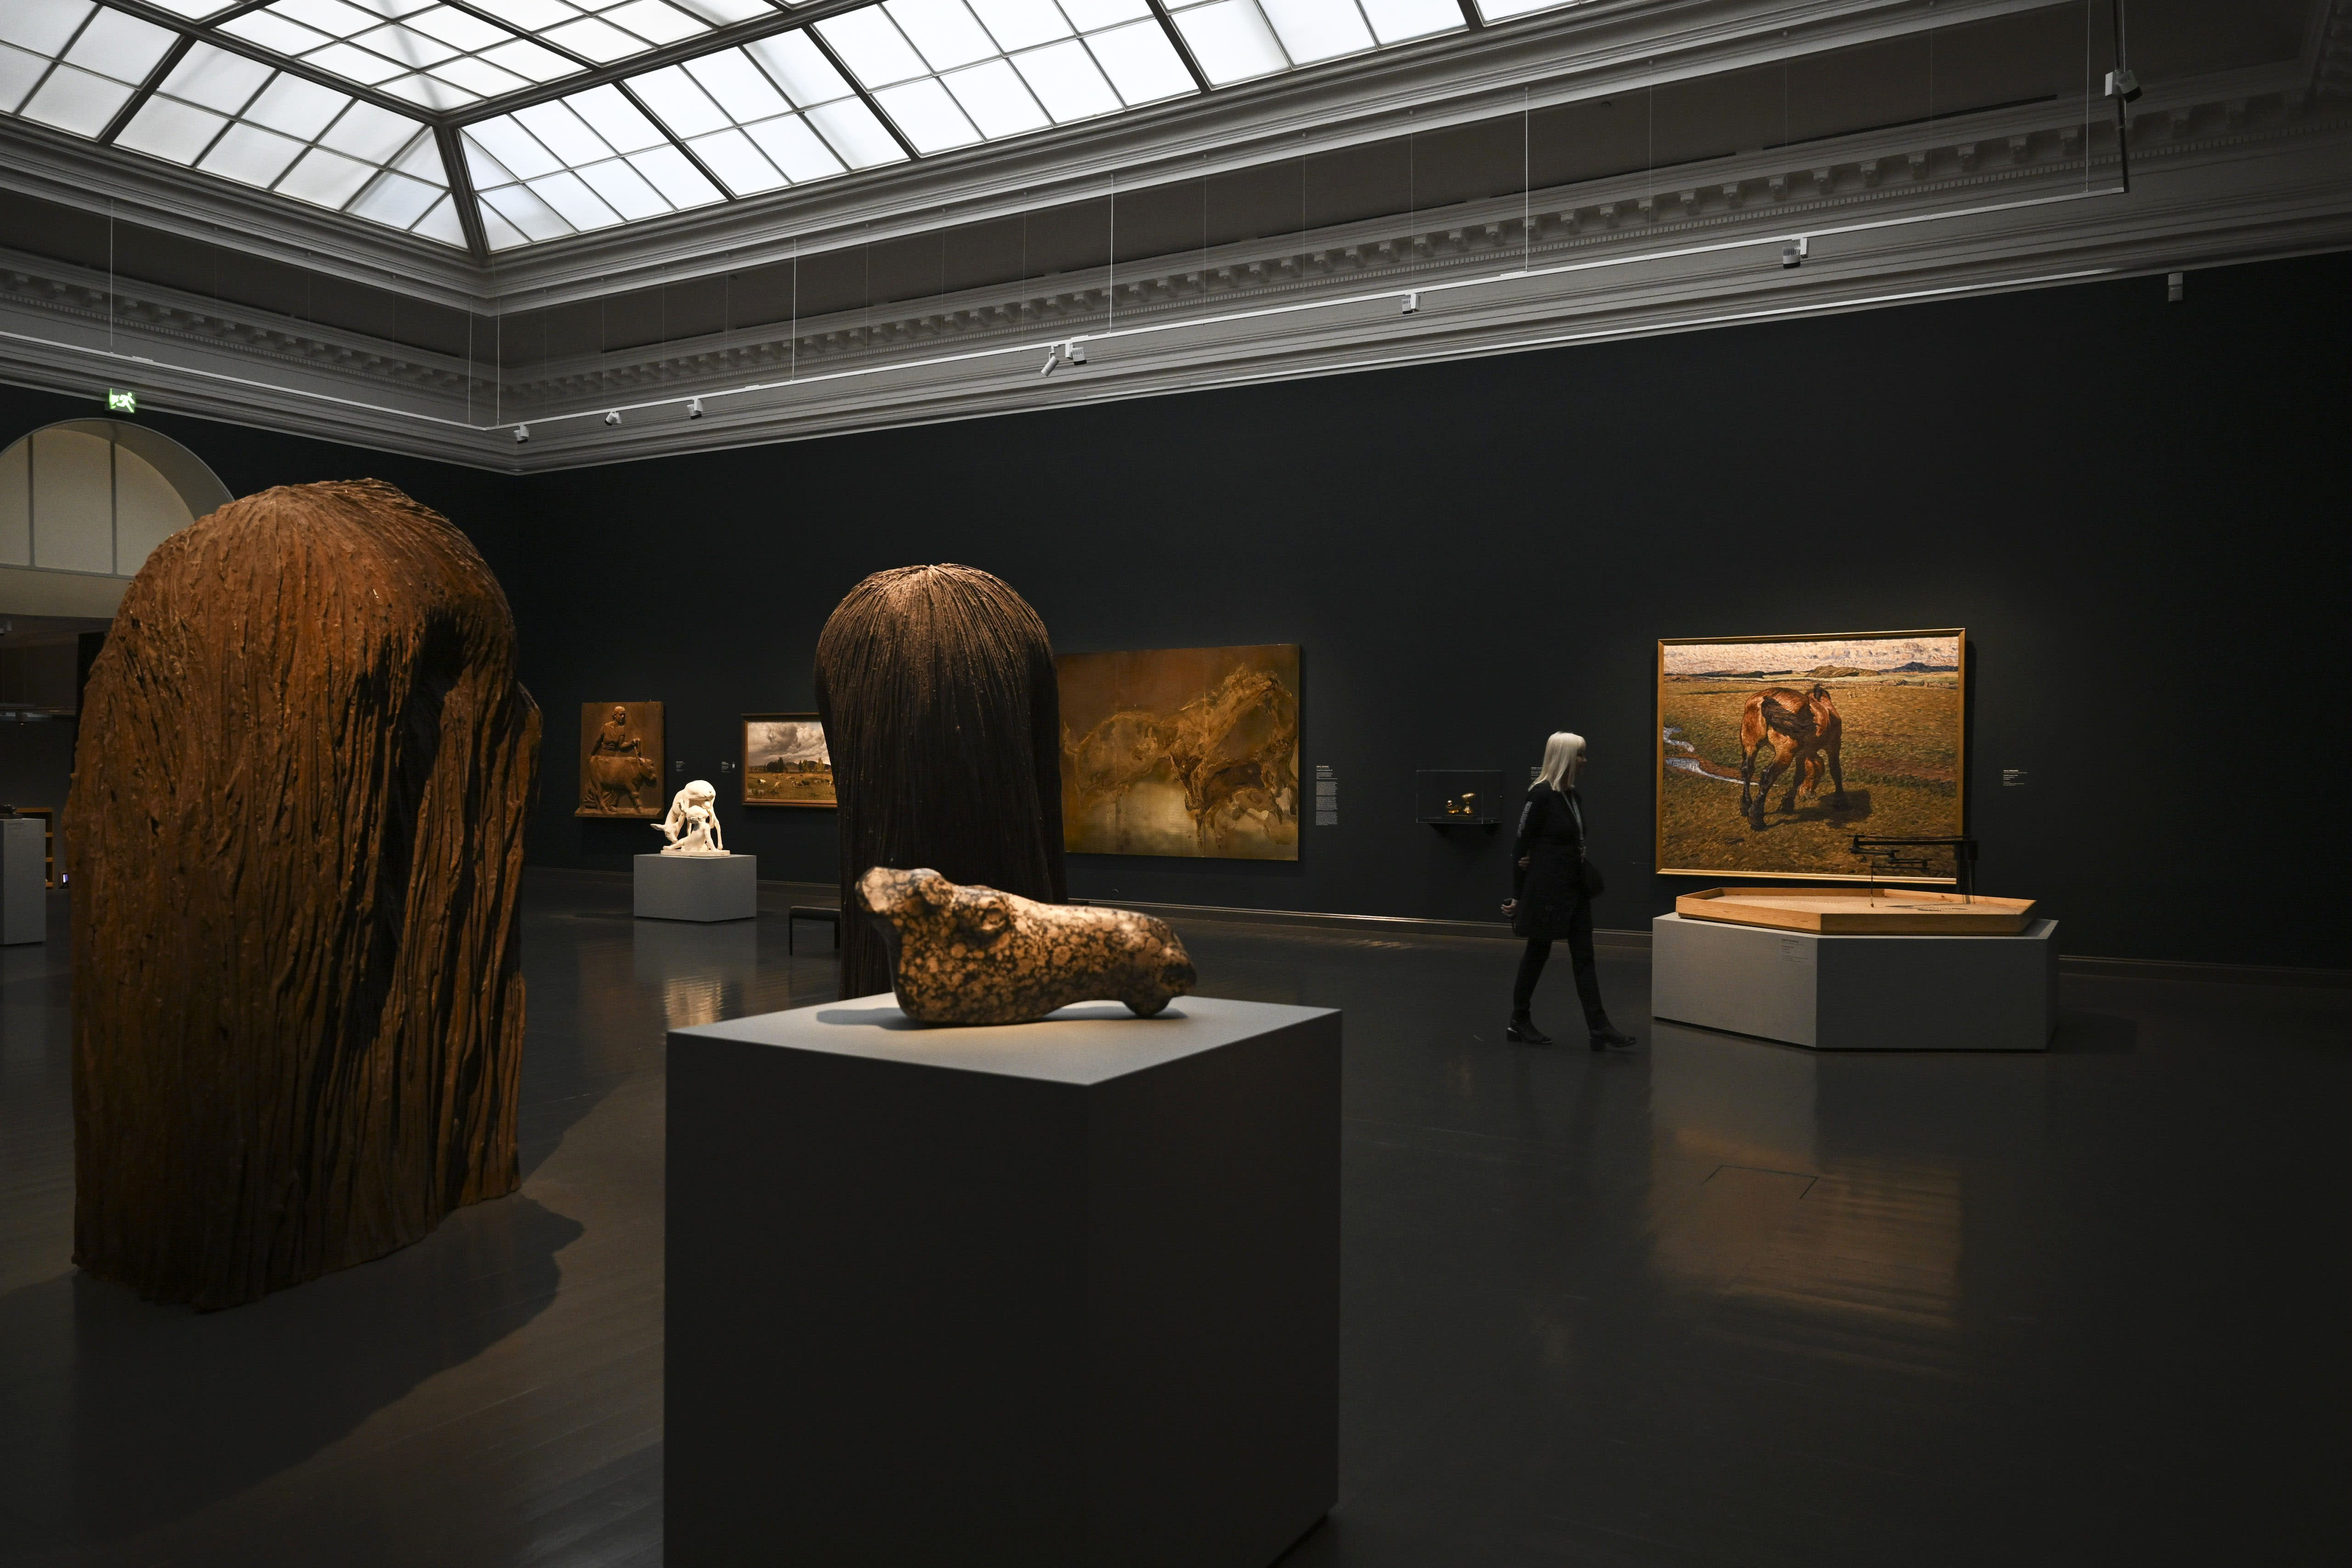 افتتح متحف هلسنكي أتينيوم للفنون مرة أخرى بعد تجديد استمر لمدة عام